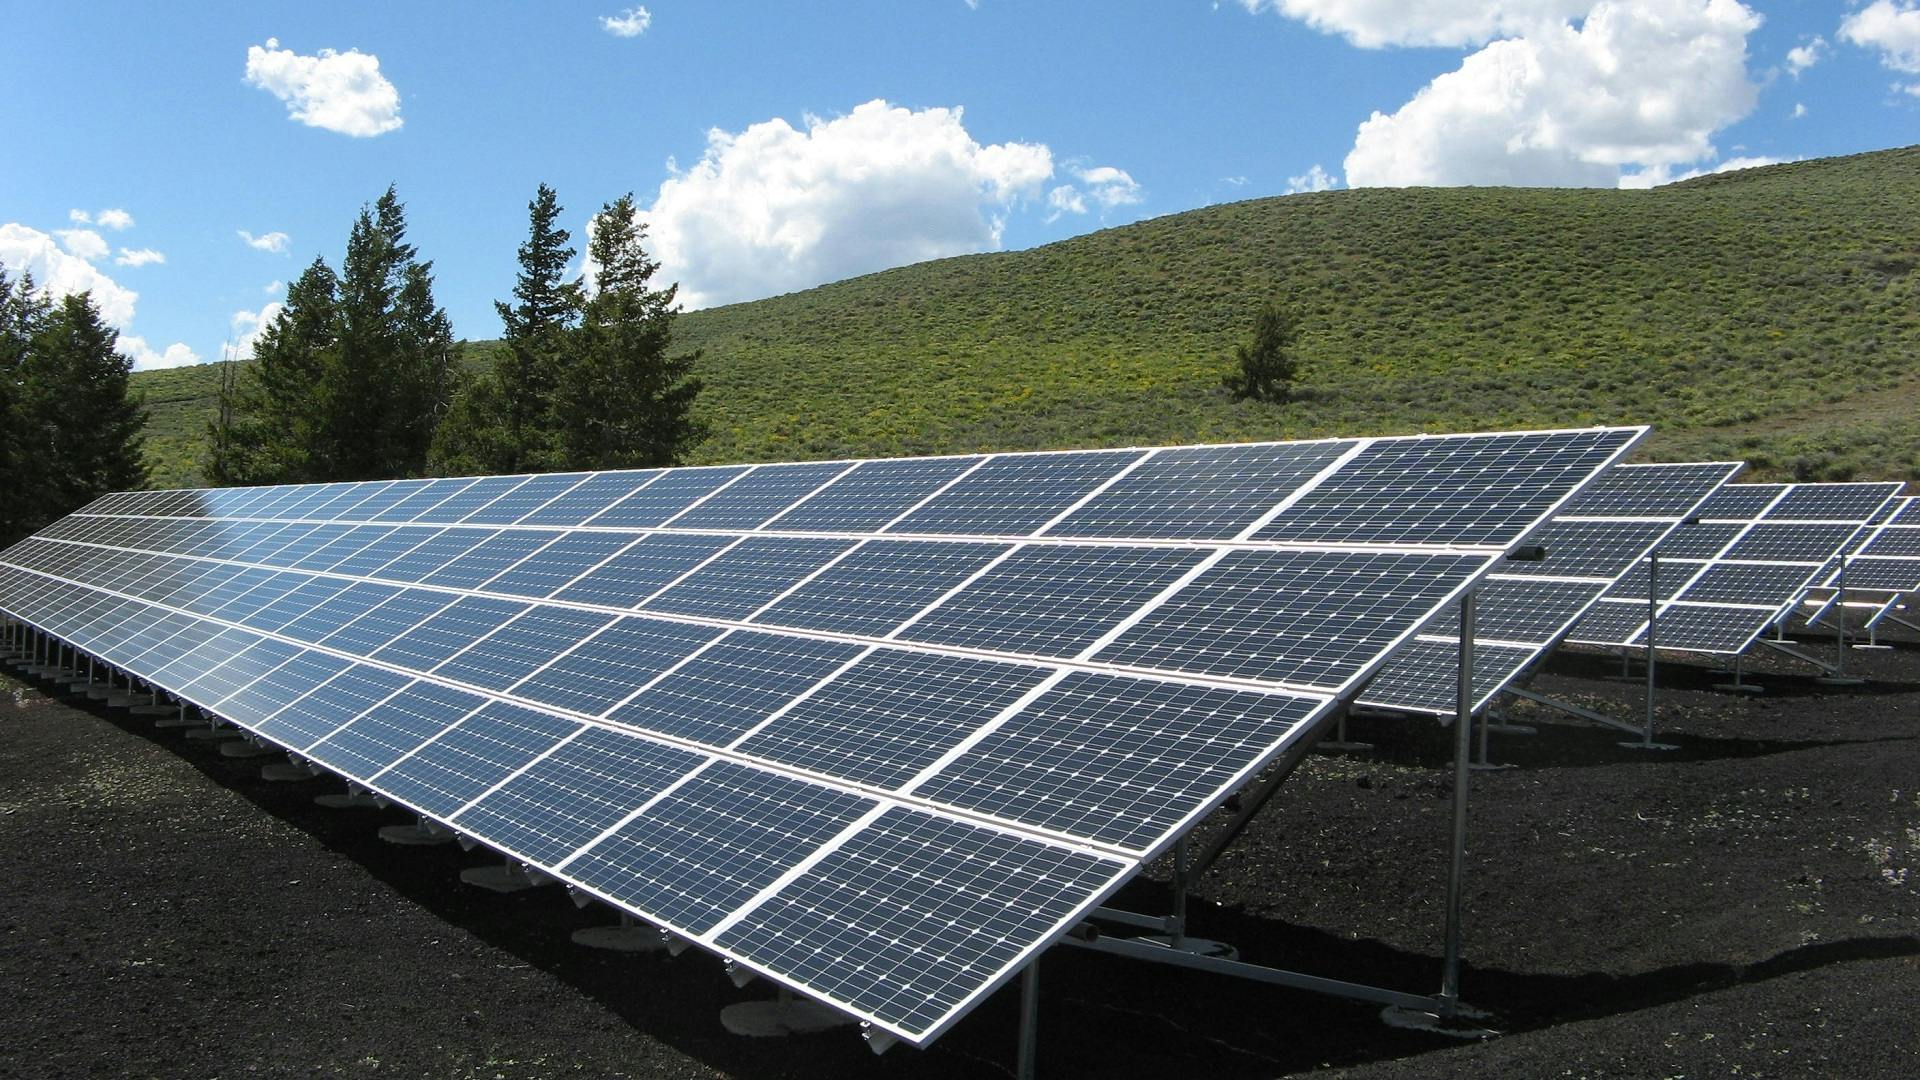 Solarni paneli i konstrukcije